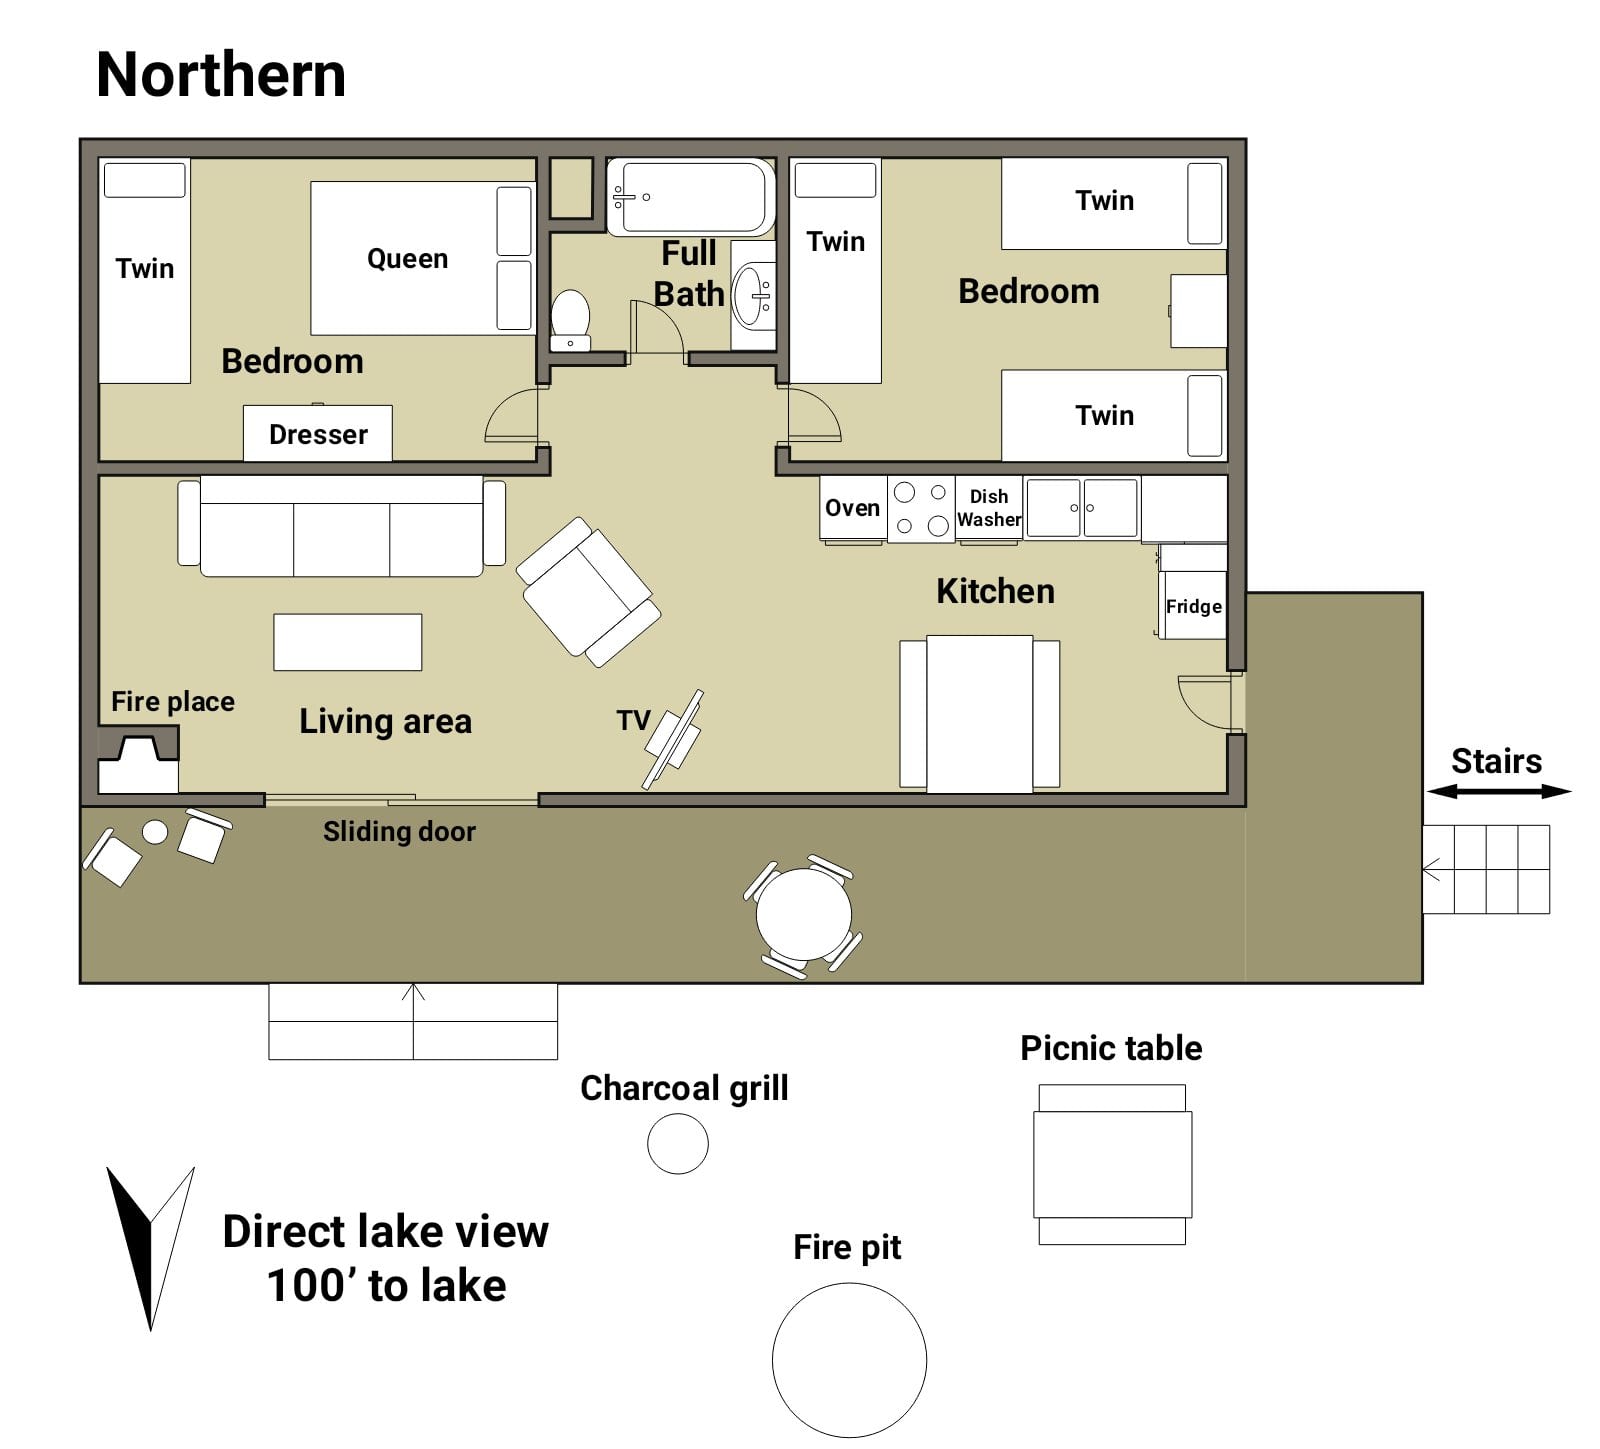 Northern Cabin floor plan.